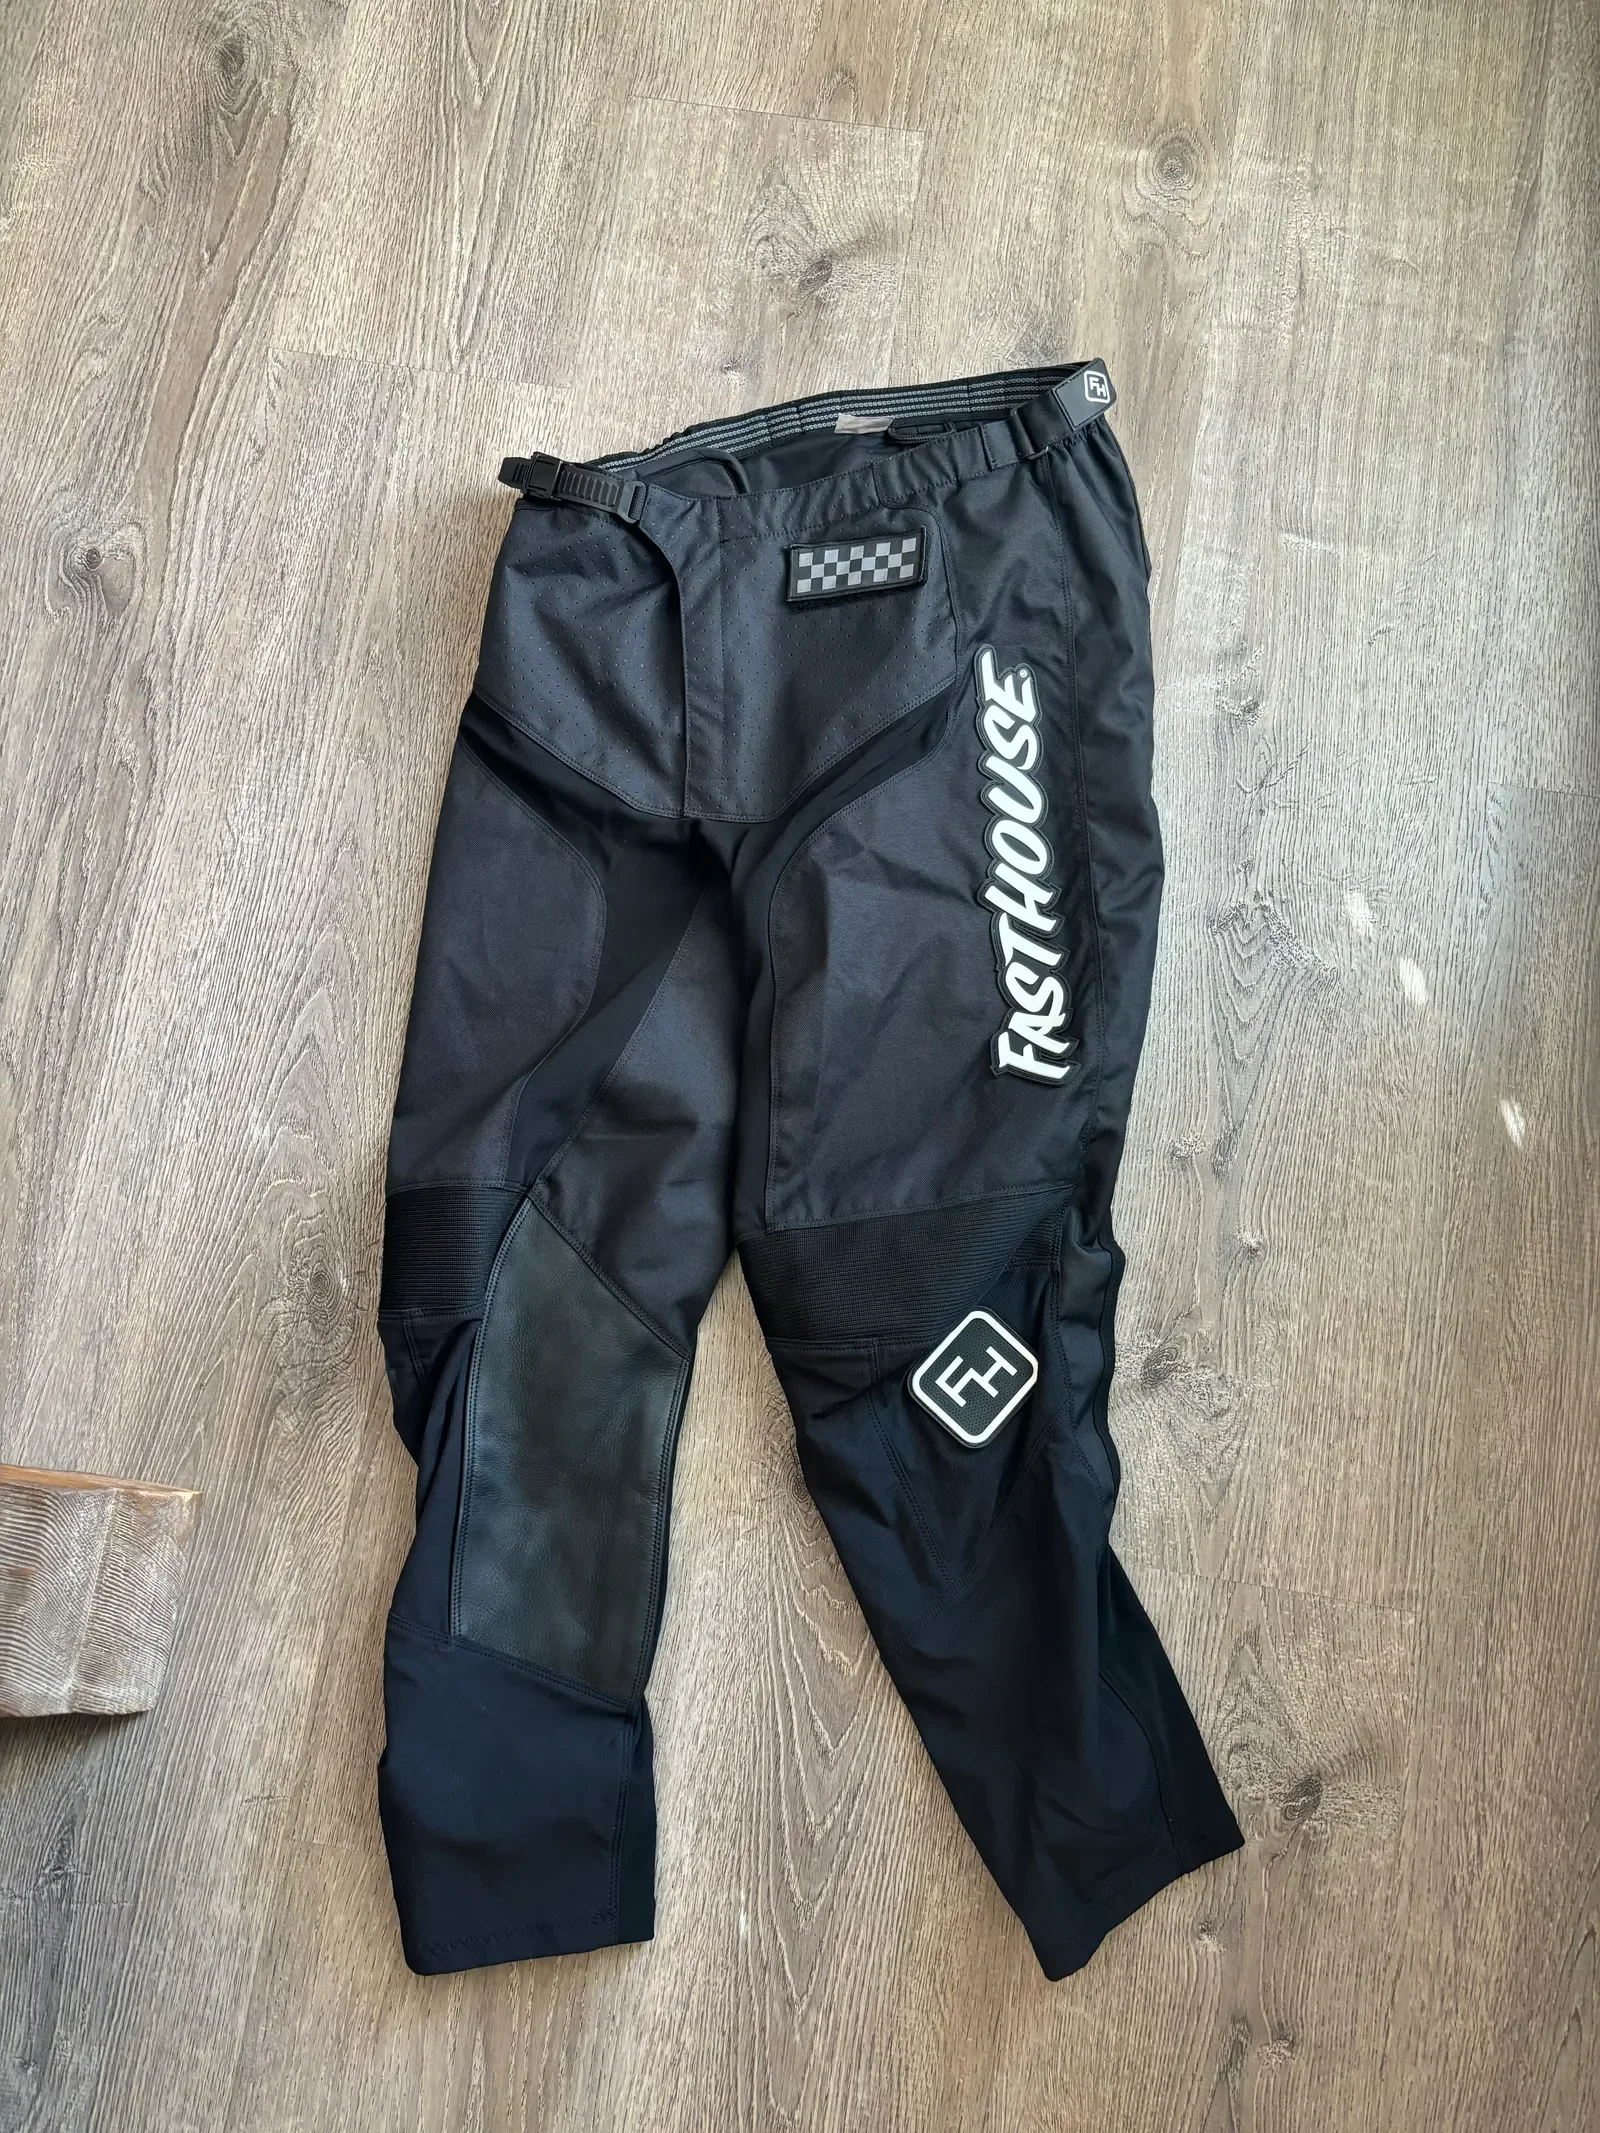 Fasthouse Carbon Pants - Black - Size 34